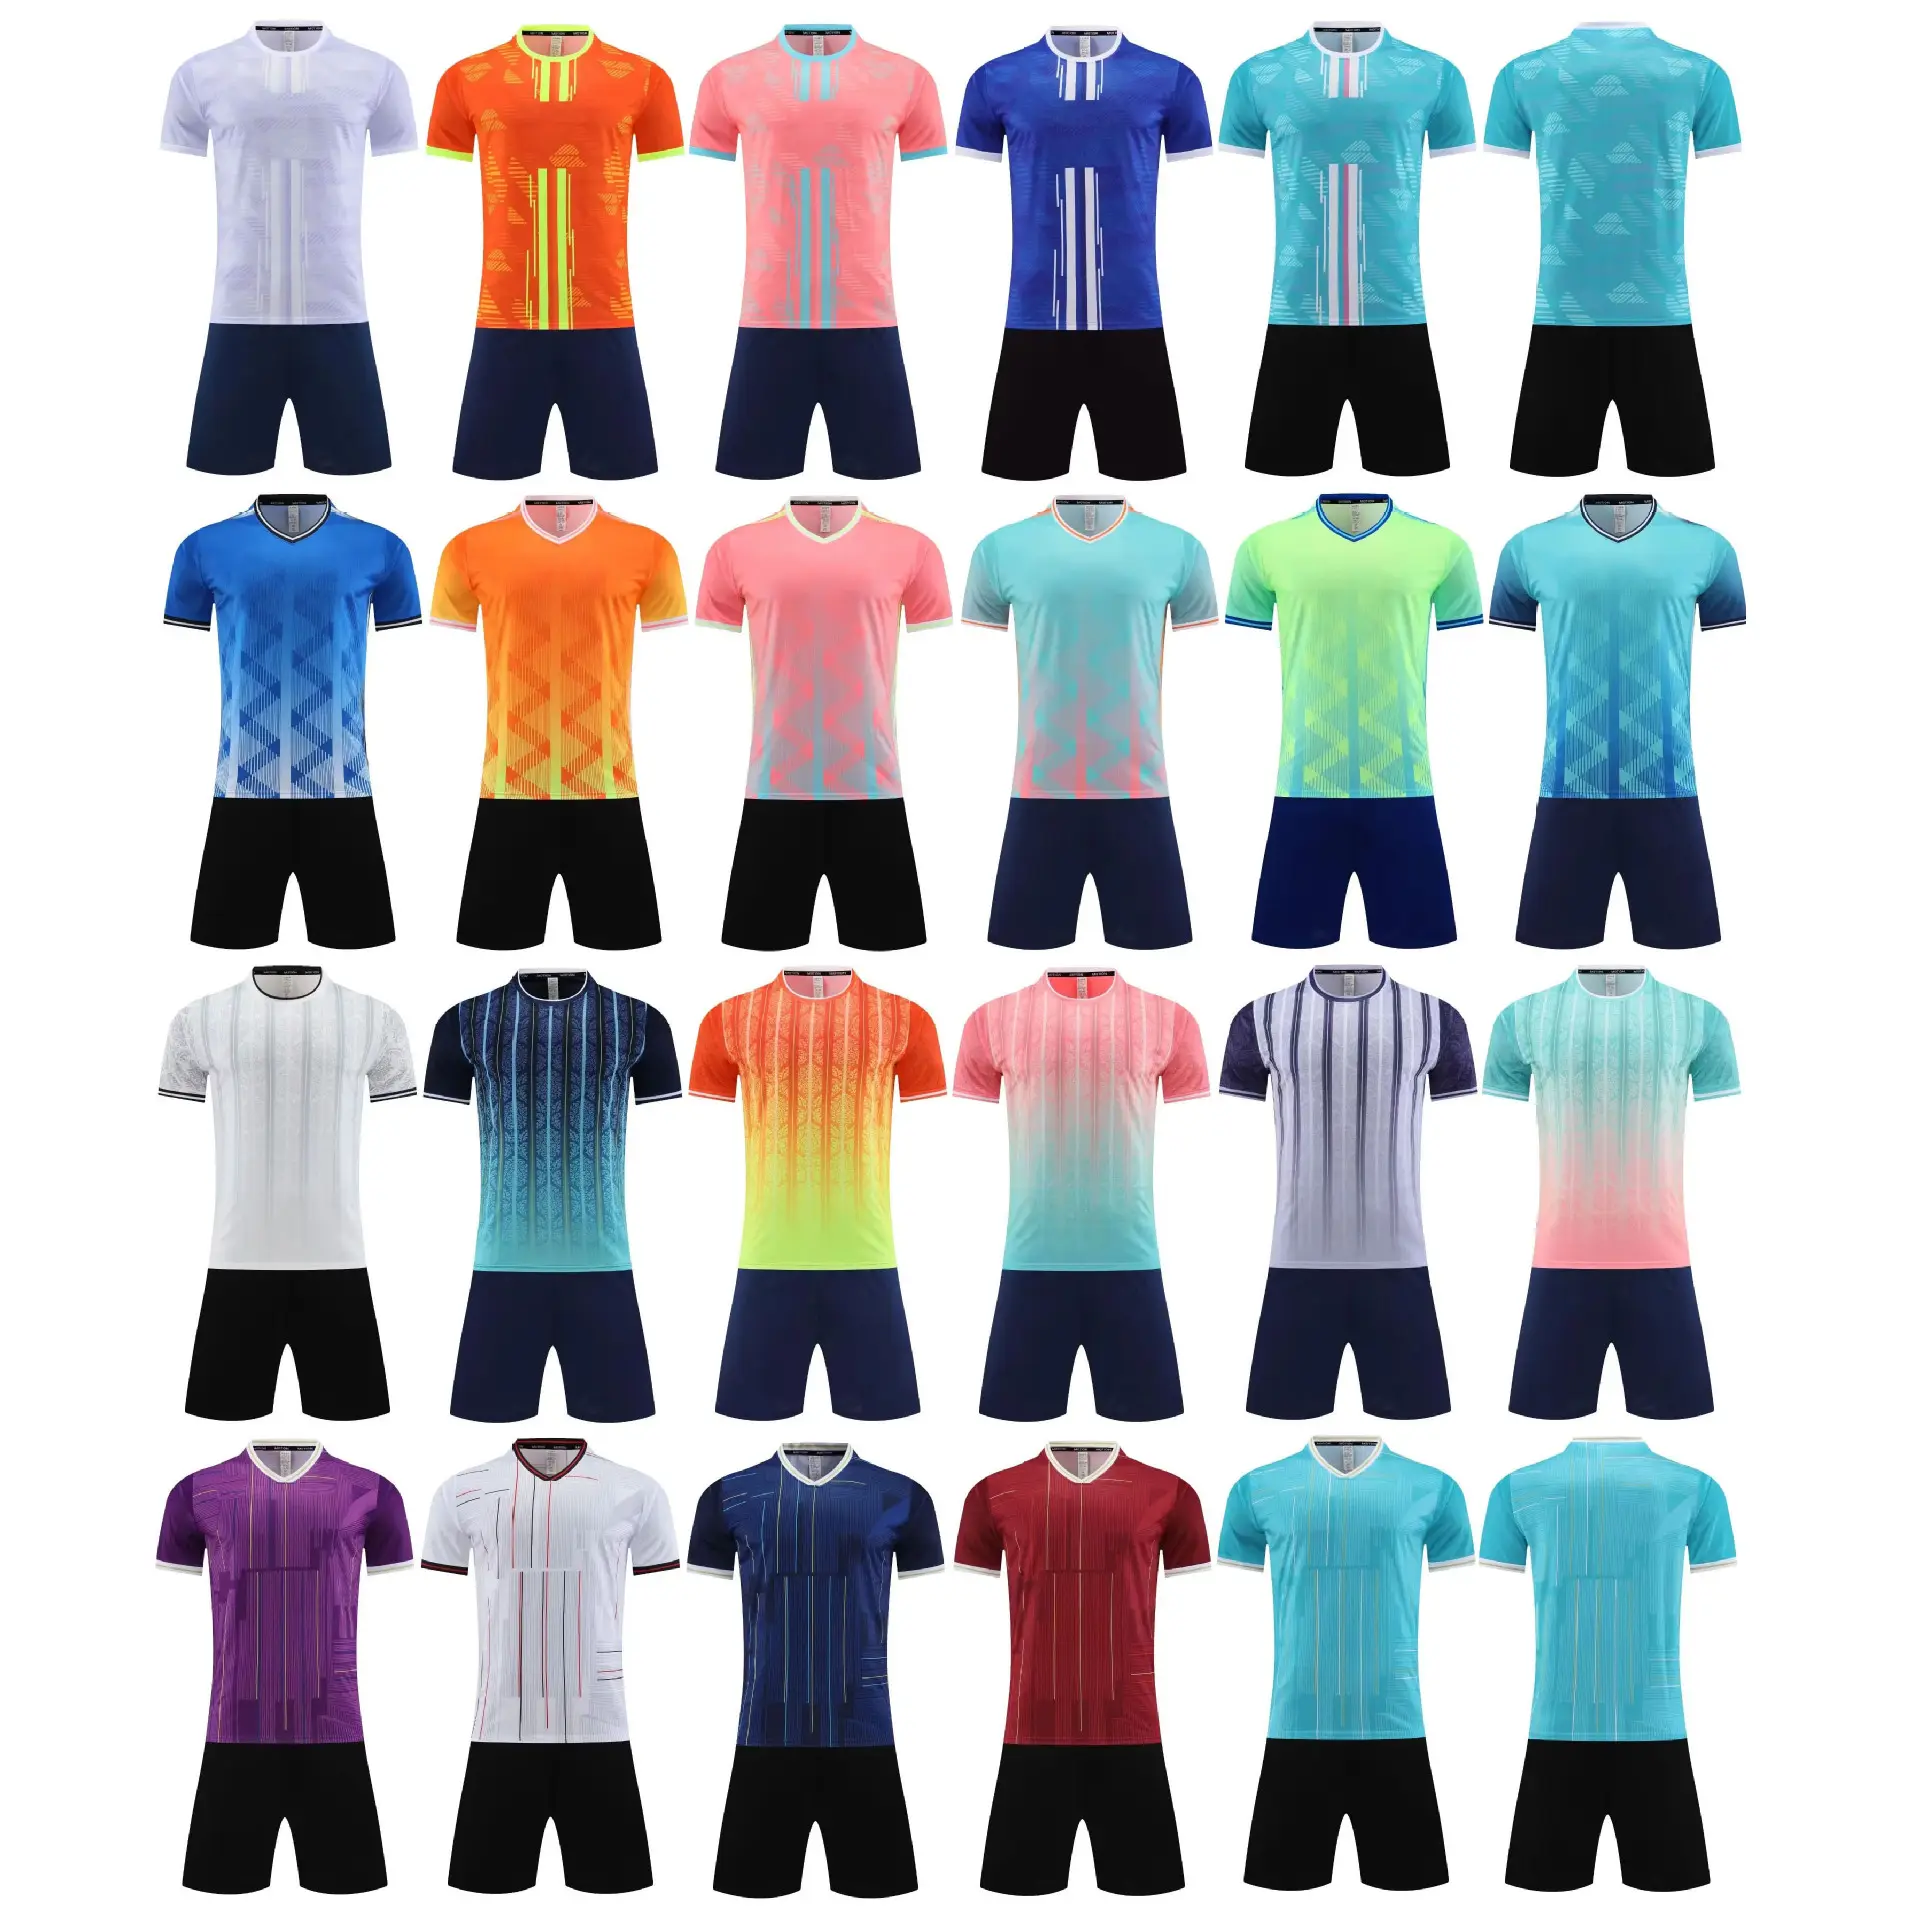 Camiseta deportiva de manga larga para hombre, sudadera para exteriores, camisetas de fútbol, Jogging, ciclismo, chaquetas, chándal de entrenamiento de fútbol